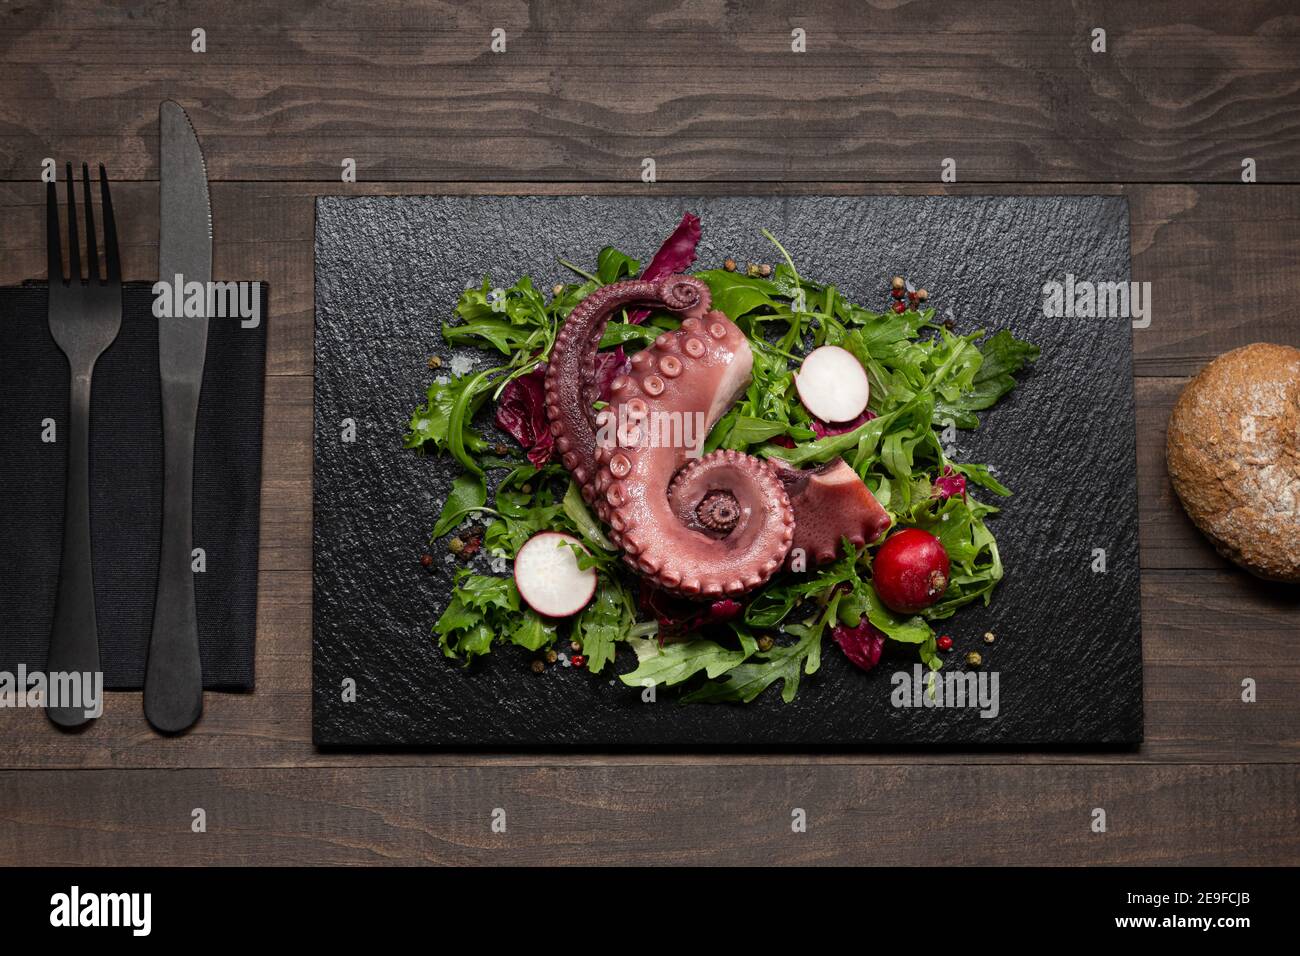 ragoût les tentacules de poulpe avec une salade sur une assiette en pierre sur une table en bois. Vue de dessus. Banque D'Images